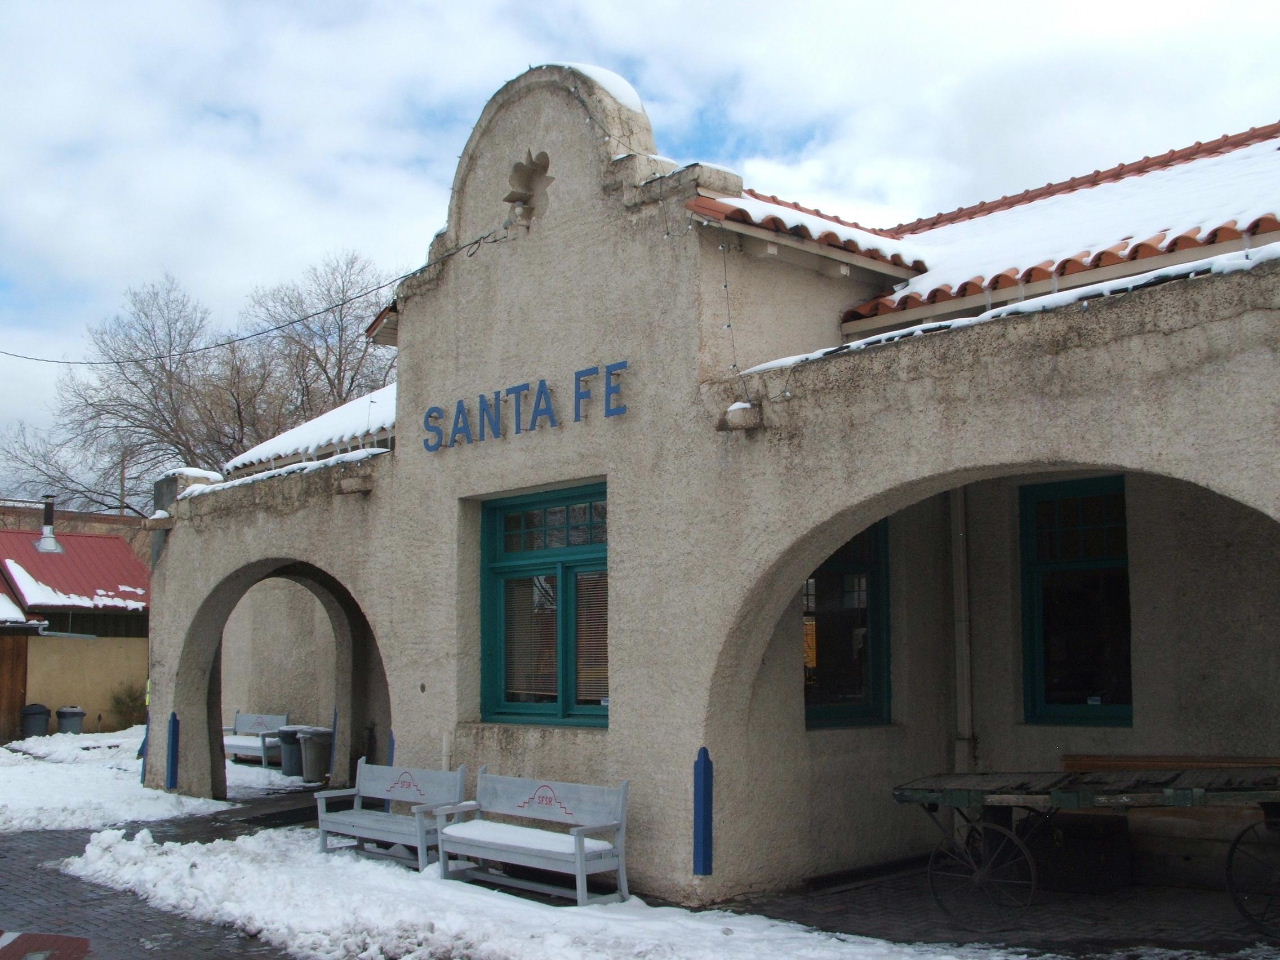 The Santa Fe Depot station in Santa Fe, New Mexico